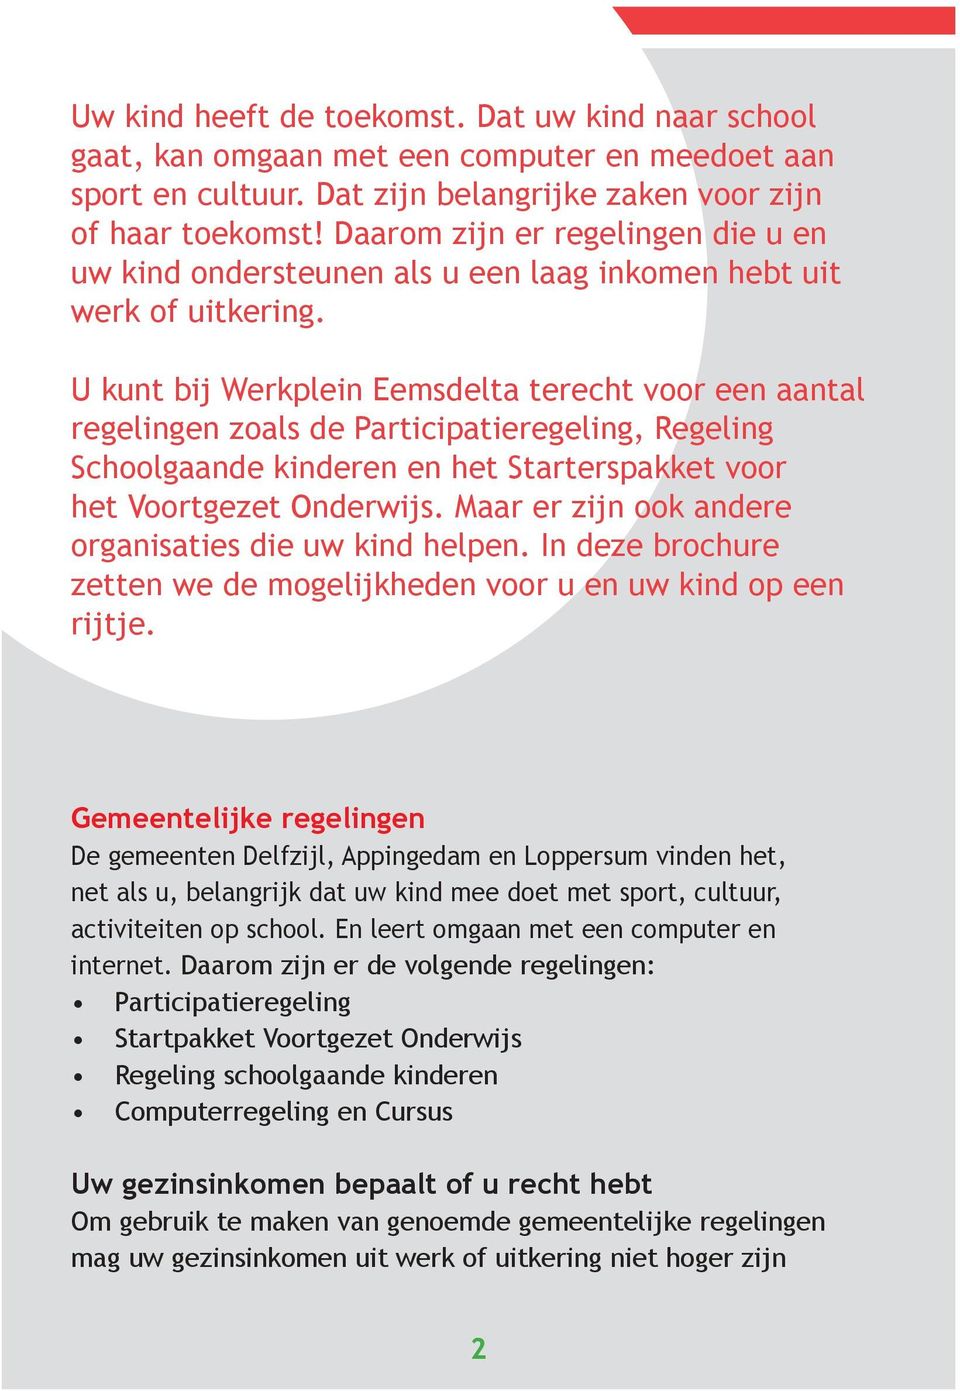 U kunt bij Werkplein Eemsdelta terecht voor een aantal regelingen zoals de Participatieregeling, Regeling Schoolgaande kinderen en het Starterspakket voor het Voortgezet Onderwijs.